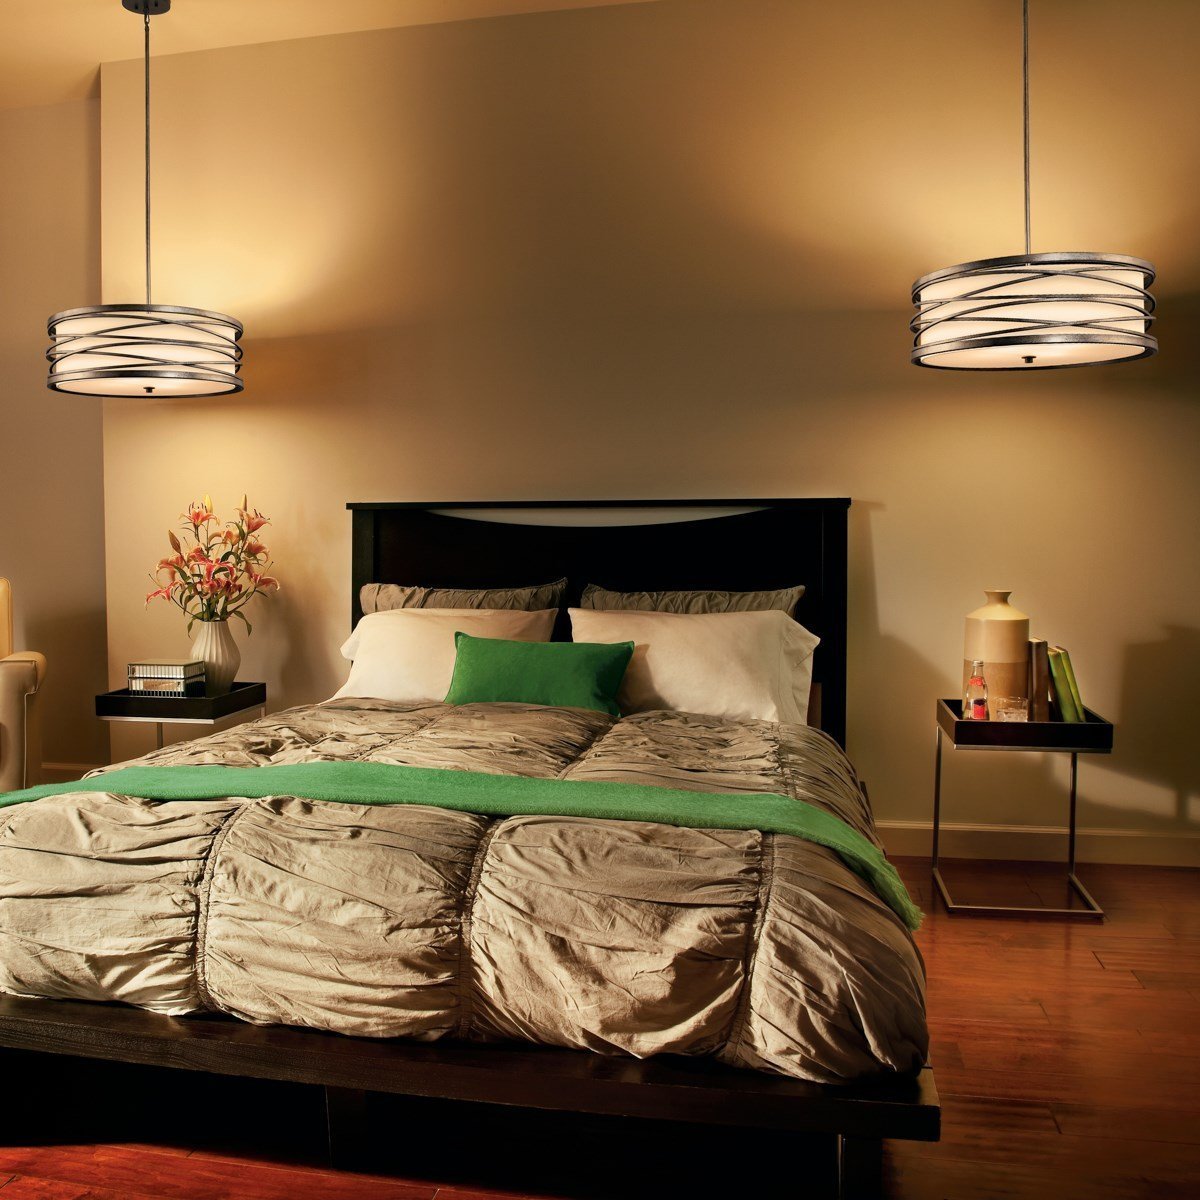 Bedroom lamps. Светильники в спальню. Светильники в интерьере спальни. Подвесные светильники в спальне. Прикроватные светильники.